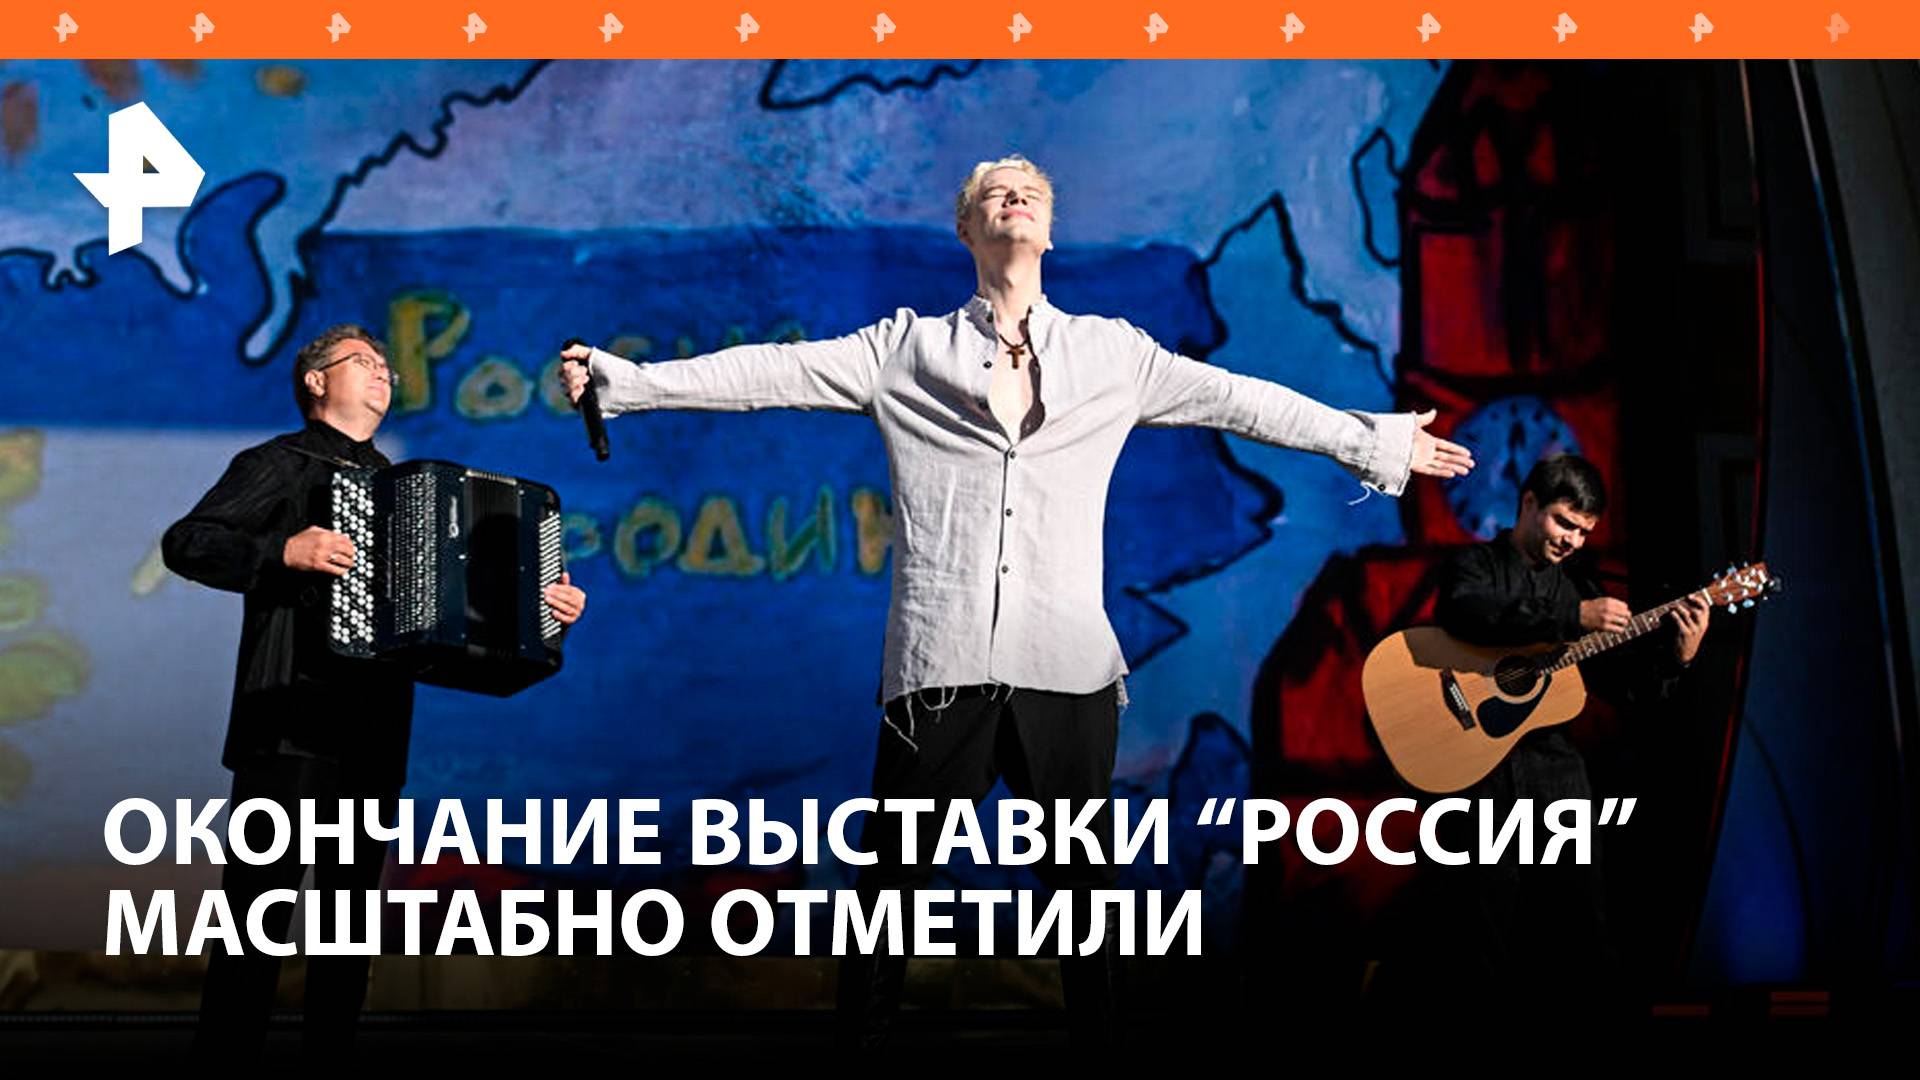 Окончание выставки "Россия" на ВДНХ отметили масштабным концертом / РЕН Новости